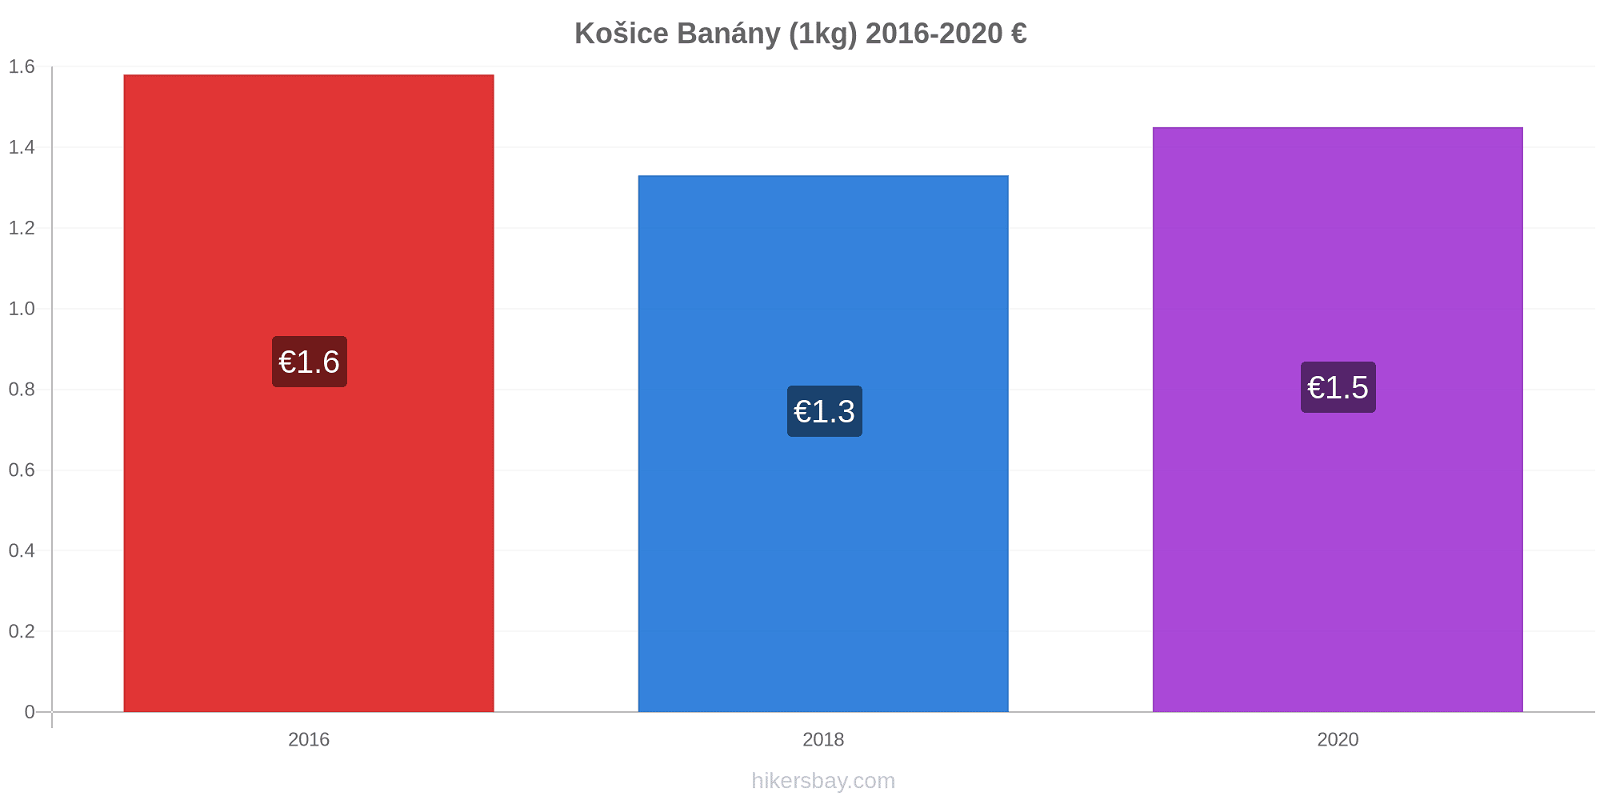 Košice změny cen Banány (1kg) hikersbay.com